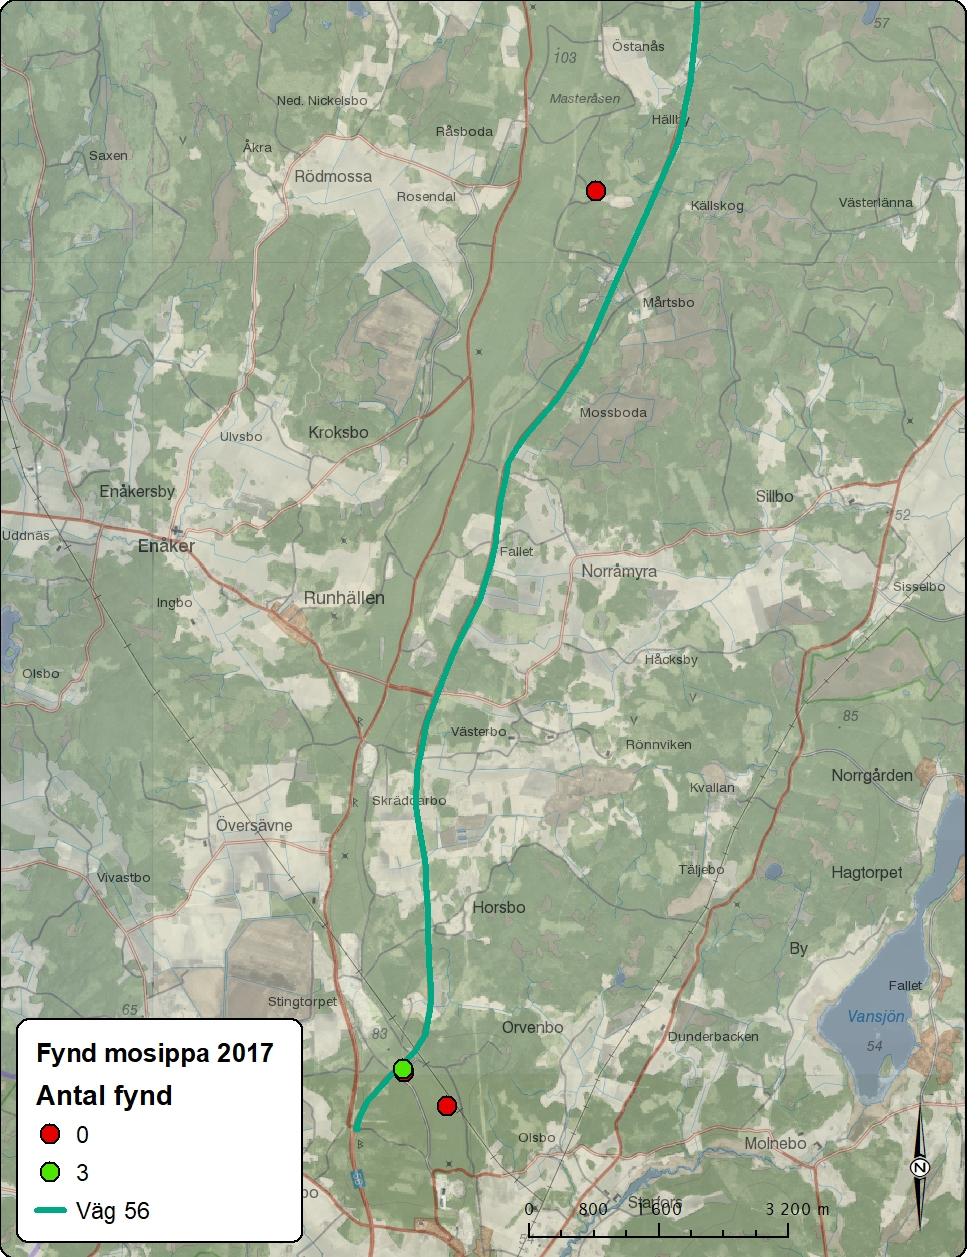 Figur 2. Översiktskarta som visar de lokaler som ingått i inventeringen 2017 dels de lokaler där mosippa påträffades under 2017.